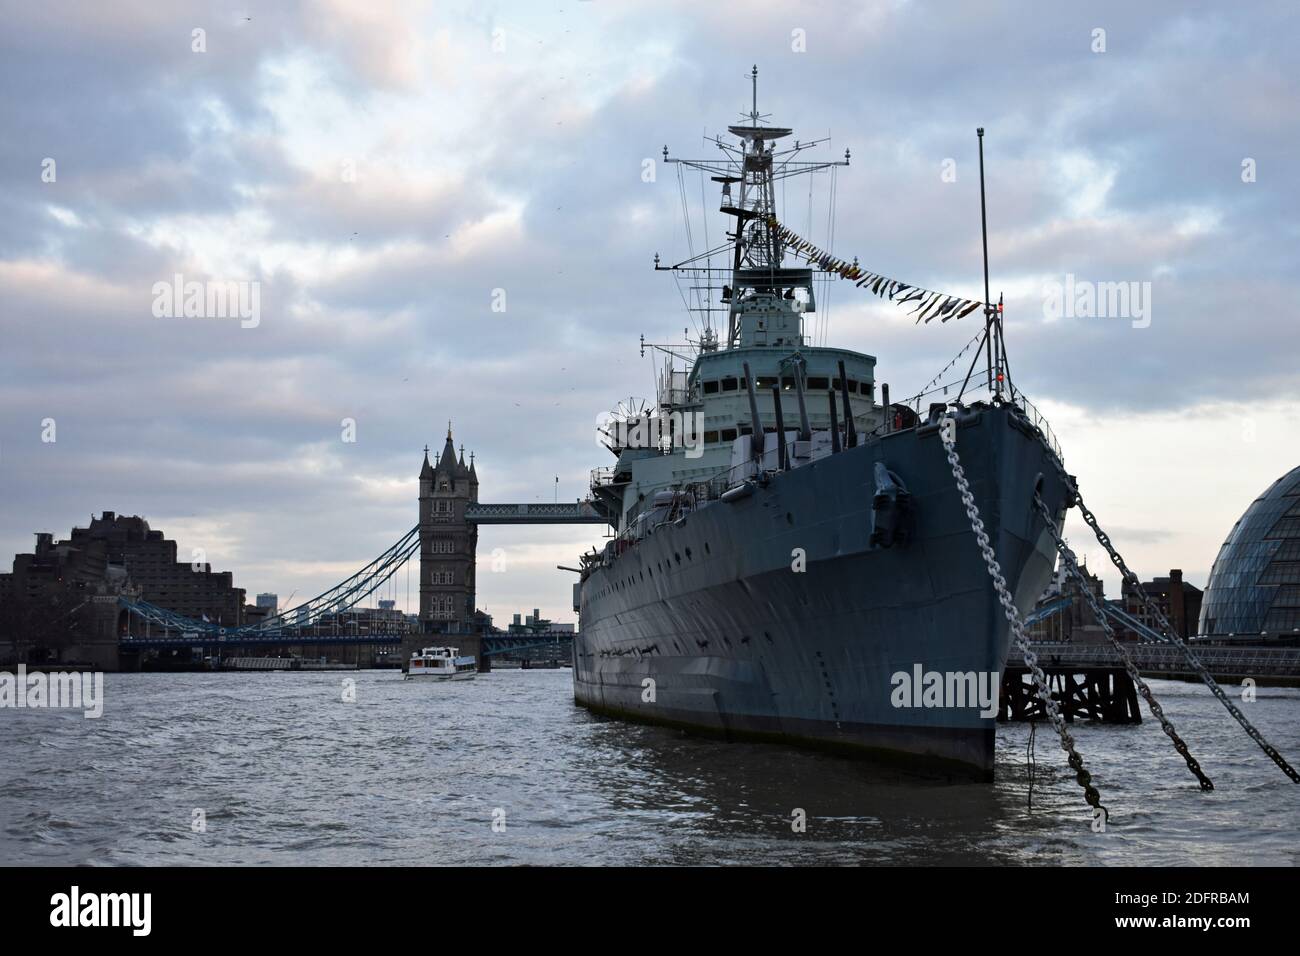 HMS Belfast amarré le long de la Tamise. Derrière le musée des navires de guerre se trouve l'hôtel de ville et le pont de la tour victoria, lors d'une journée à Londres, au Royaume-Uni. Banque D'Images